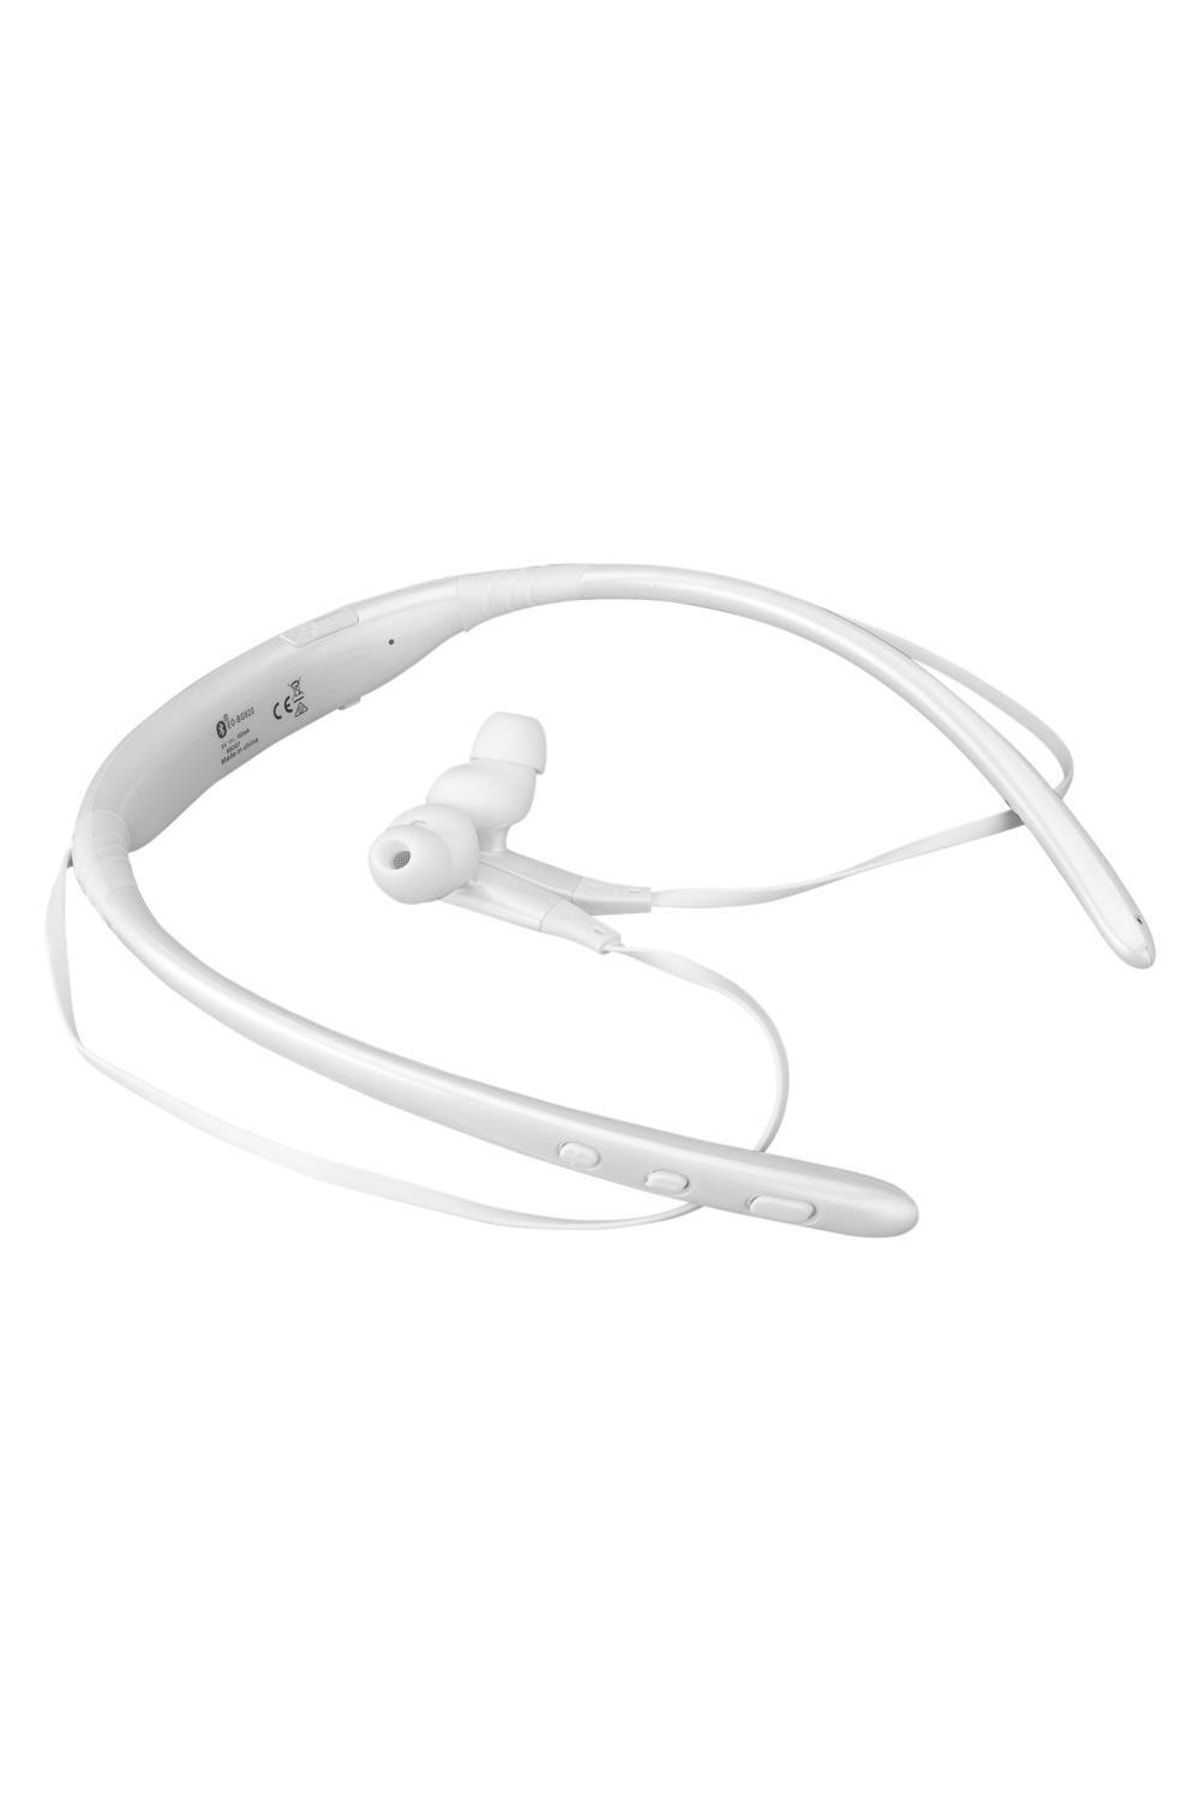 Hytech Hy-xbk100 Beyaz Boyun Askılı Mıknatıslı Bluetooth Spor Kulak Içi Kulaklık & Mikrofon